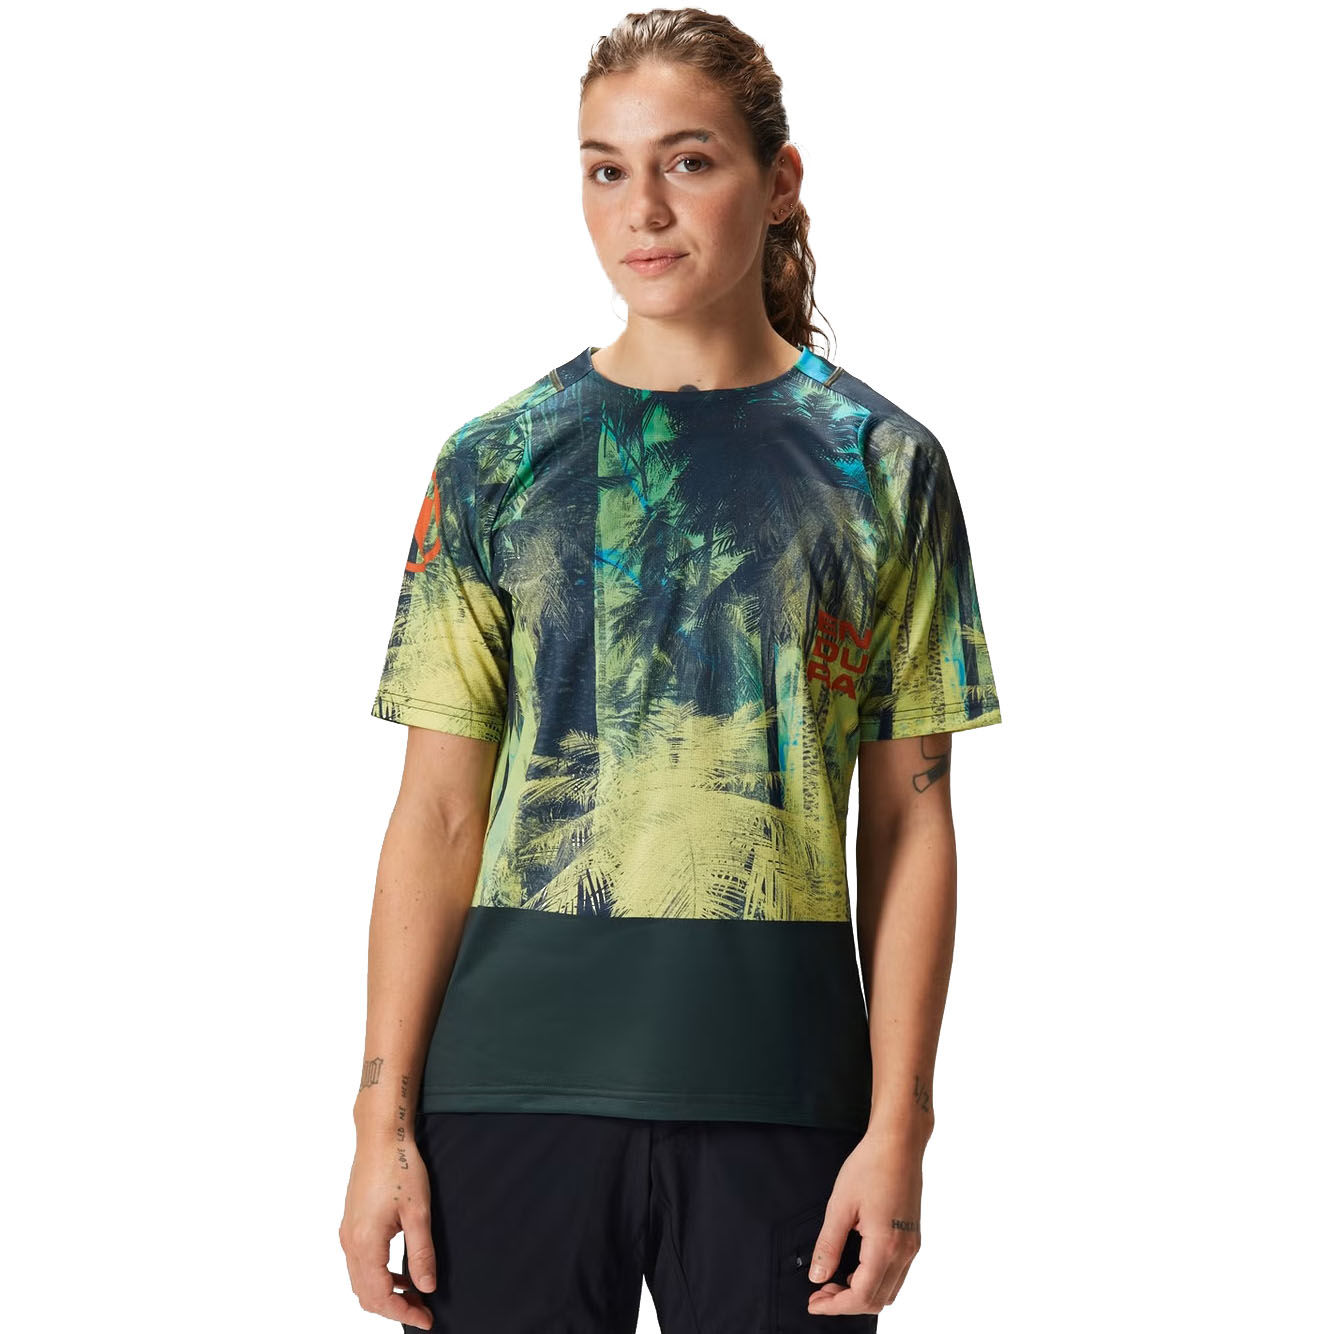 Produktbild von Endura Tropical LTD T-Shirt Damen - camouflage